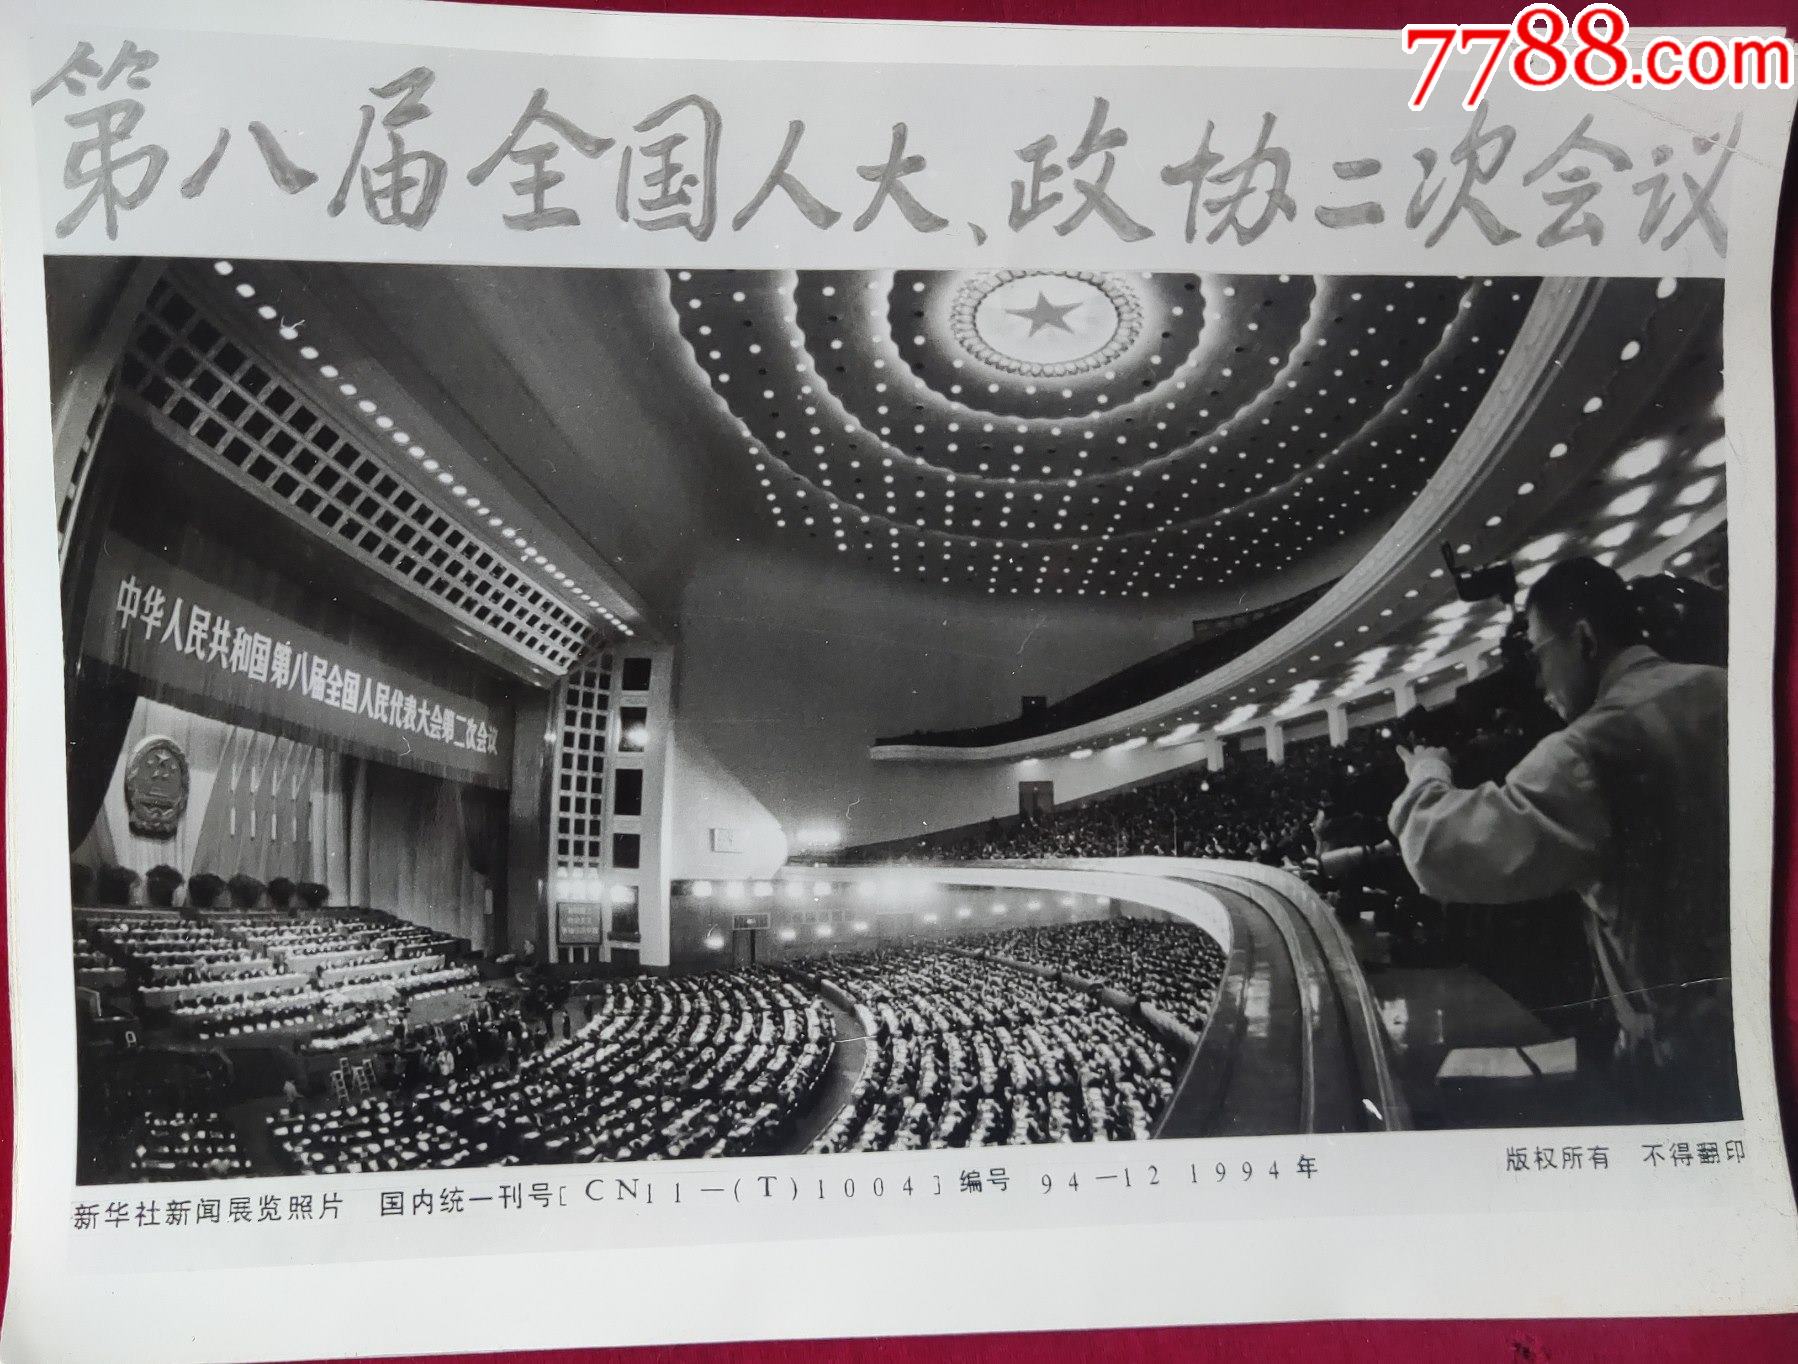 第八届全国人大政协二次会议照片20张全2张右侧有潮渍印1994年